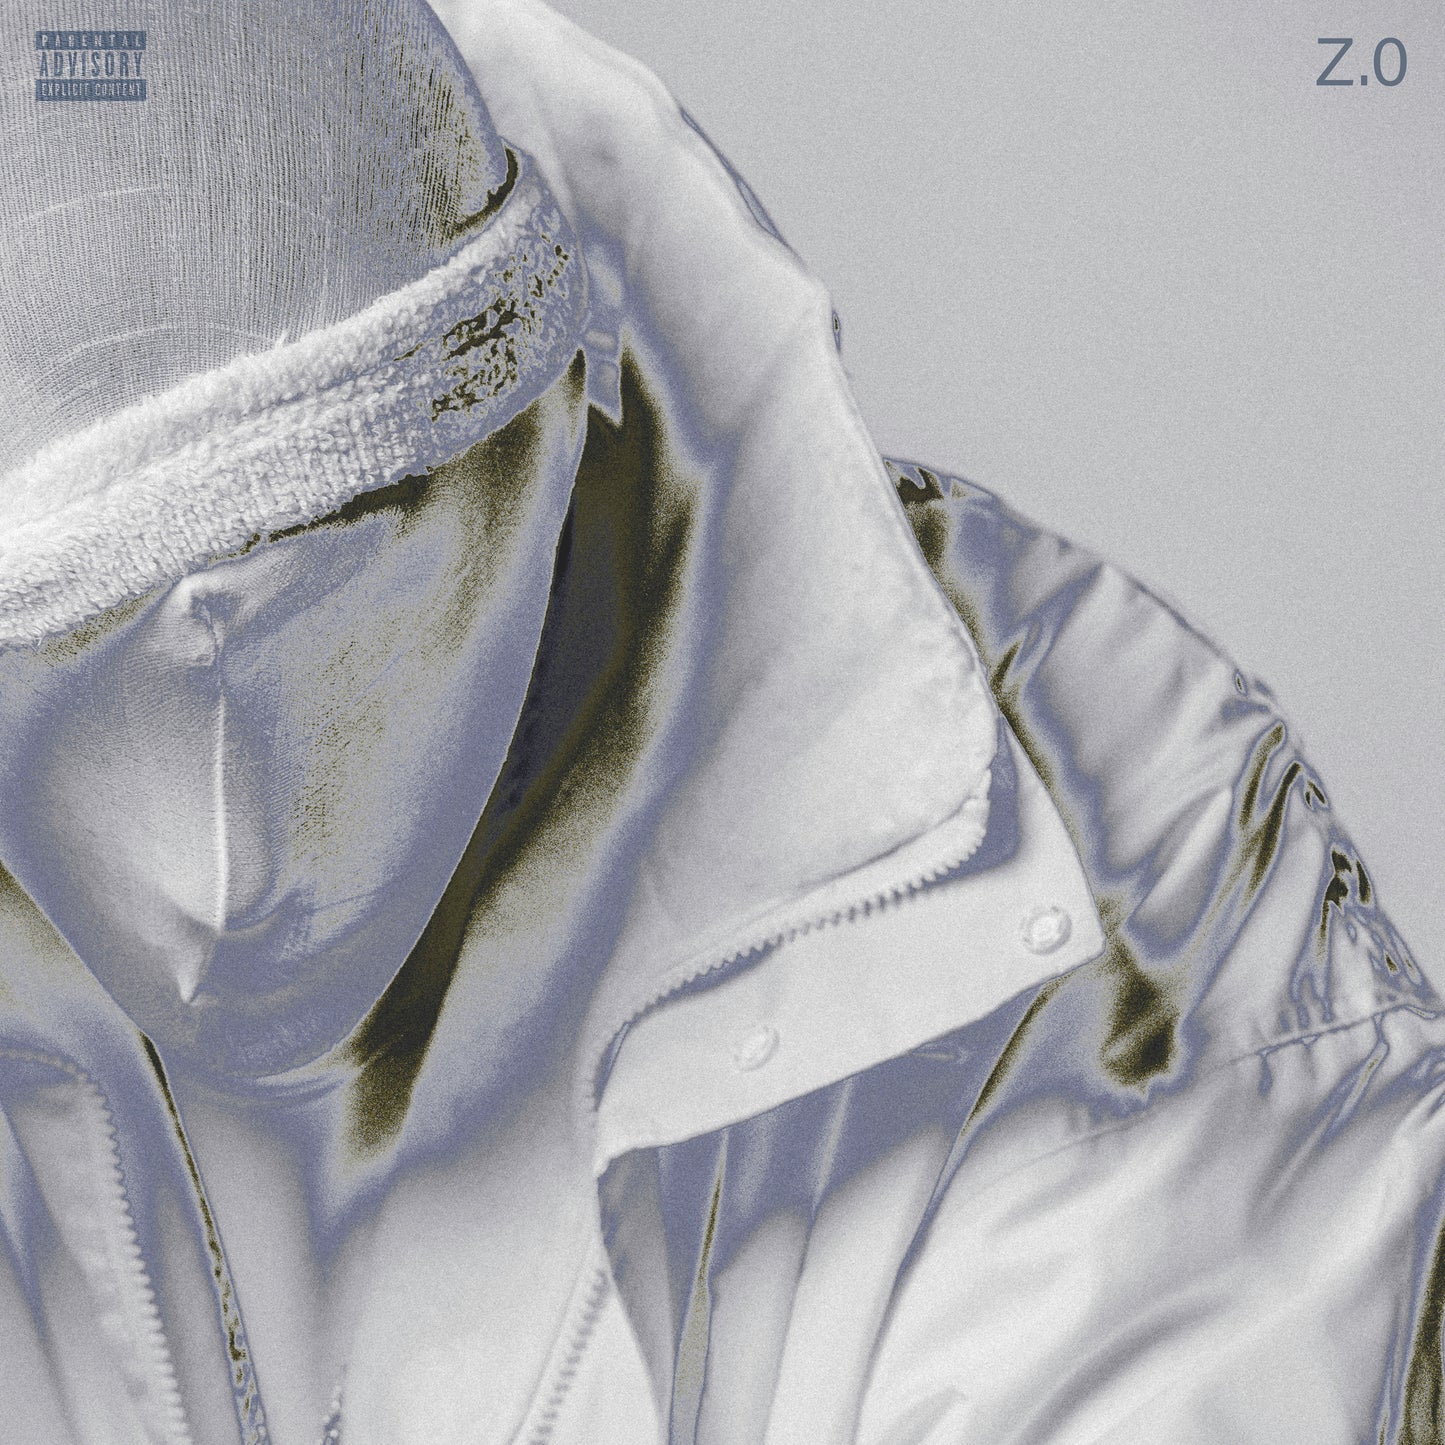 Cenza - Z.0 ( EP digital )